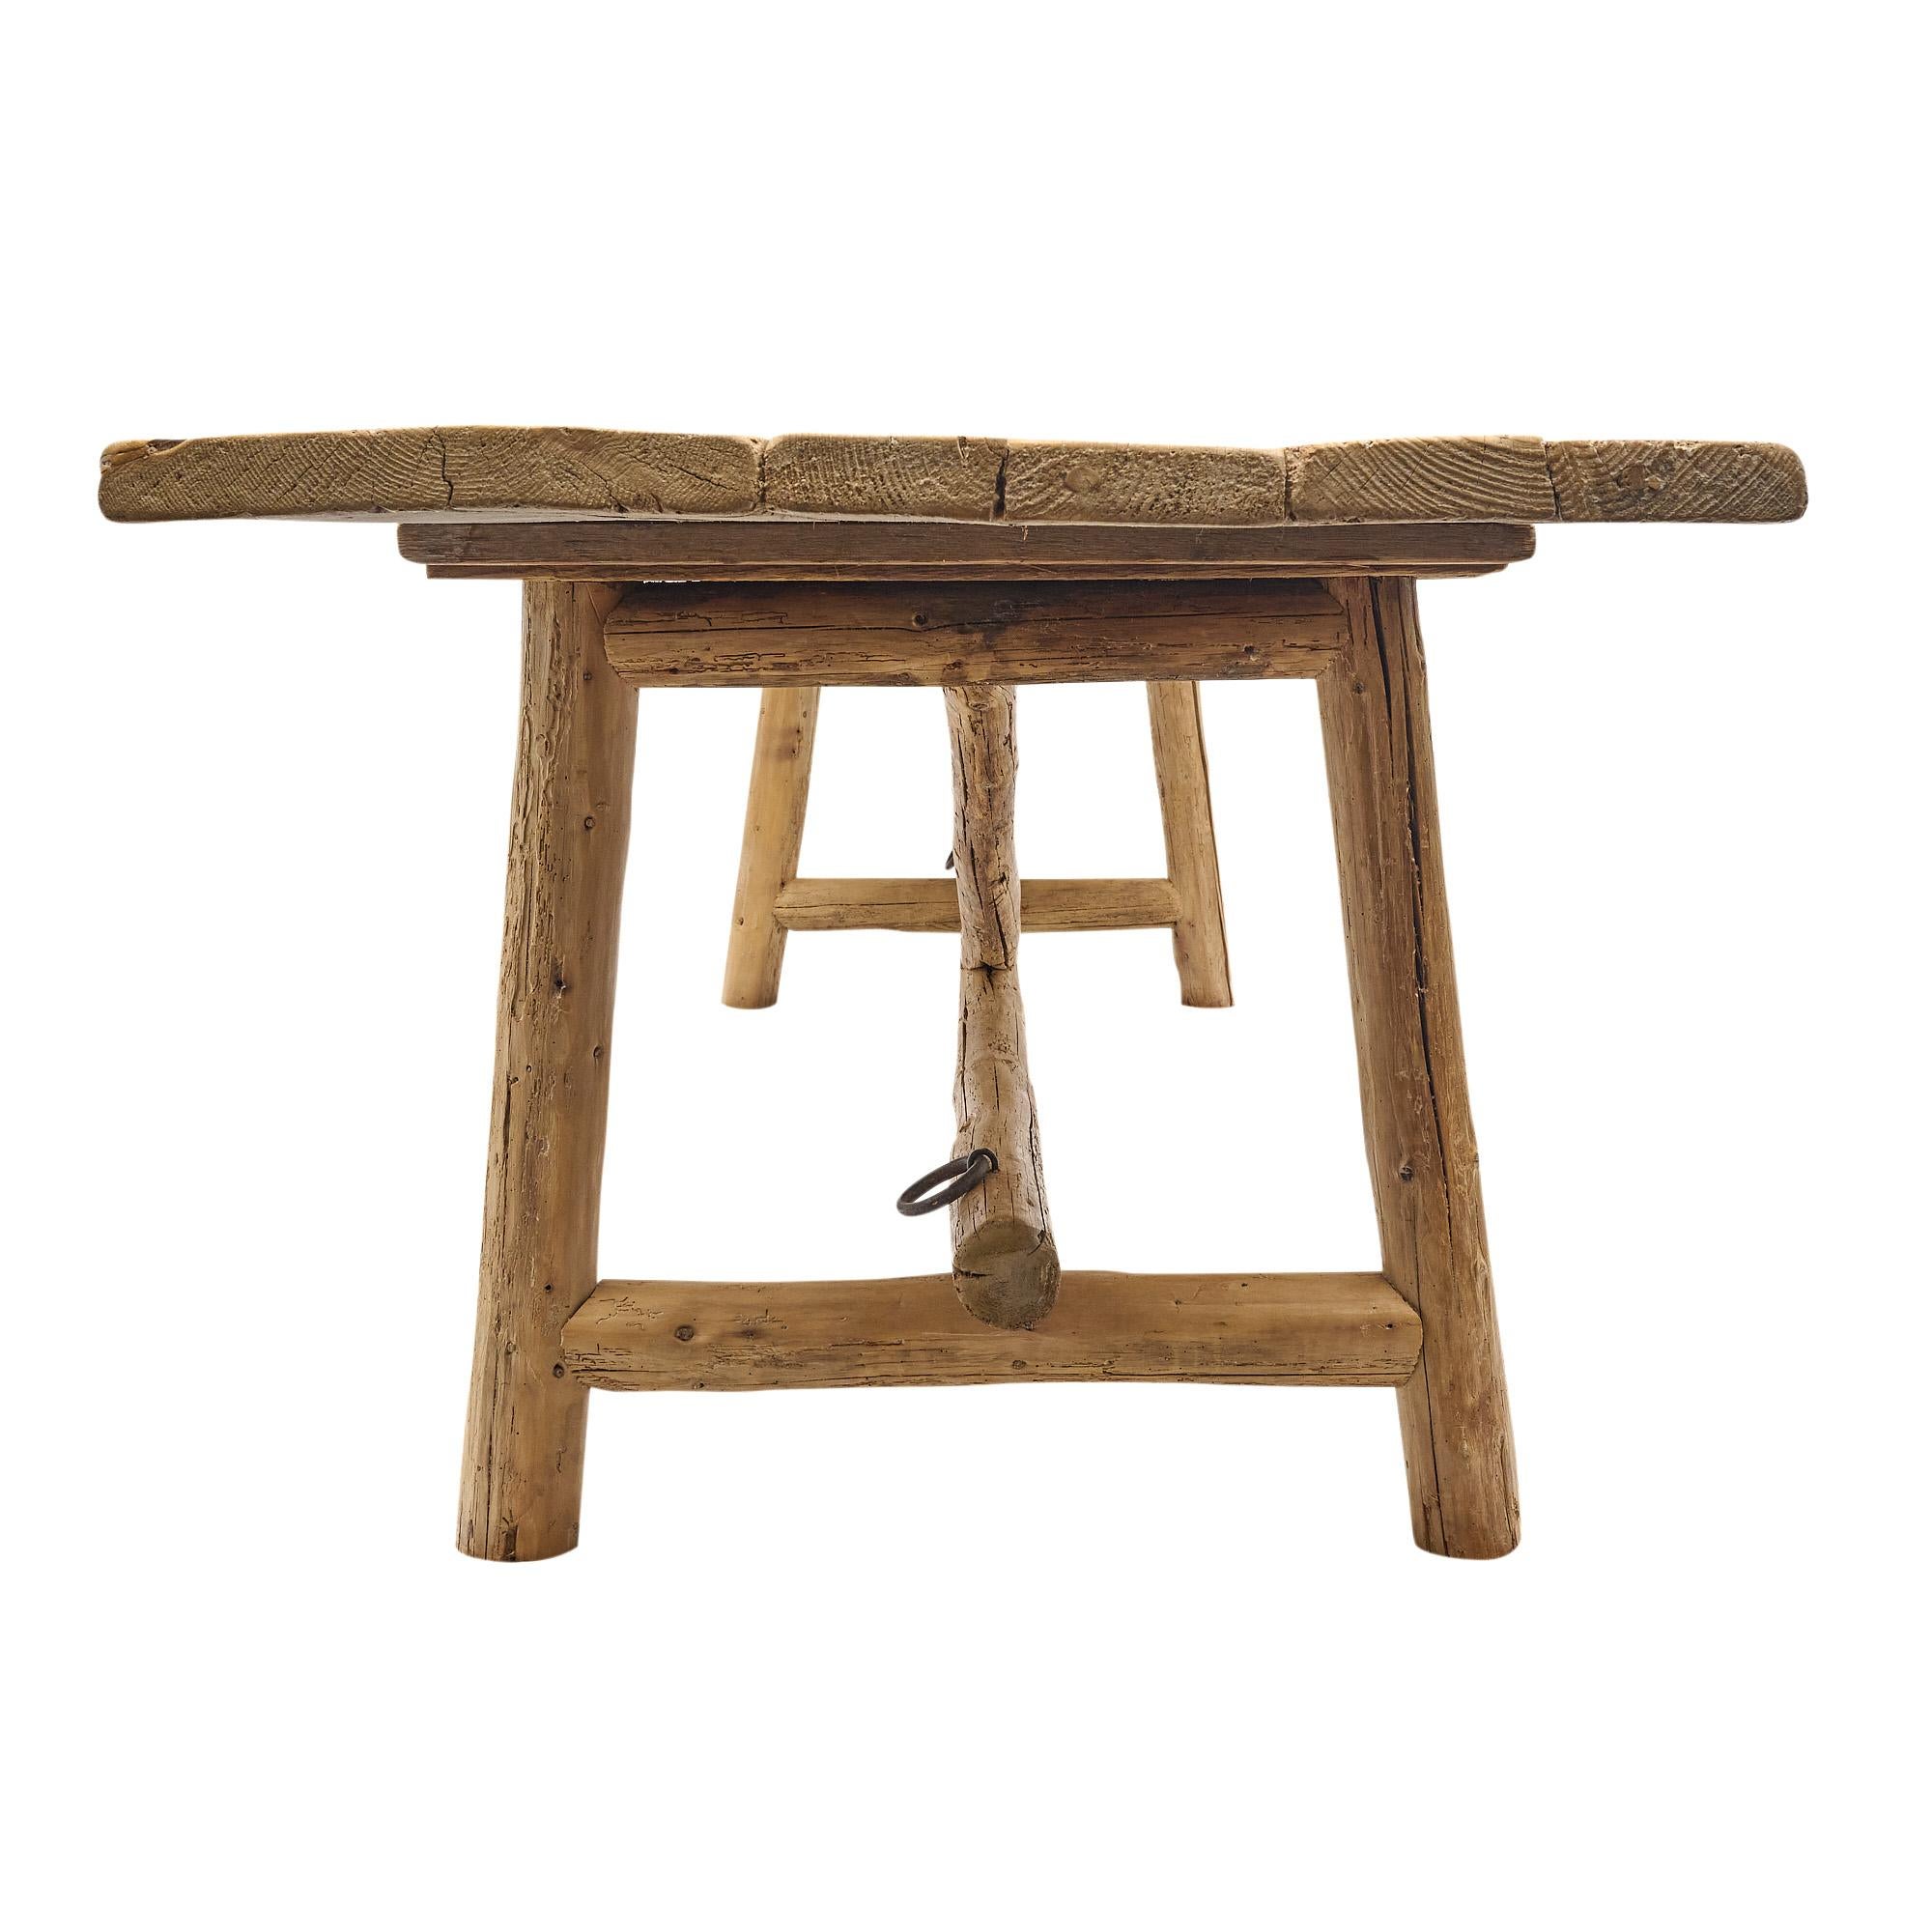 Bauernhoftisch, italienisch aus der Region Emilia-Romagna in Italien. Es ist aus Erlenholz gefertigt, originale Zapfenkonstruktion, dreifache Plankenplatte.
